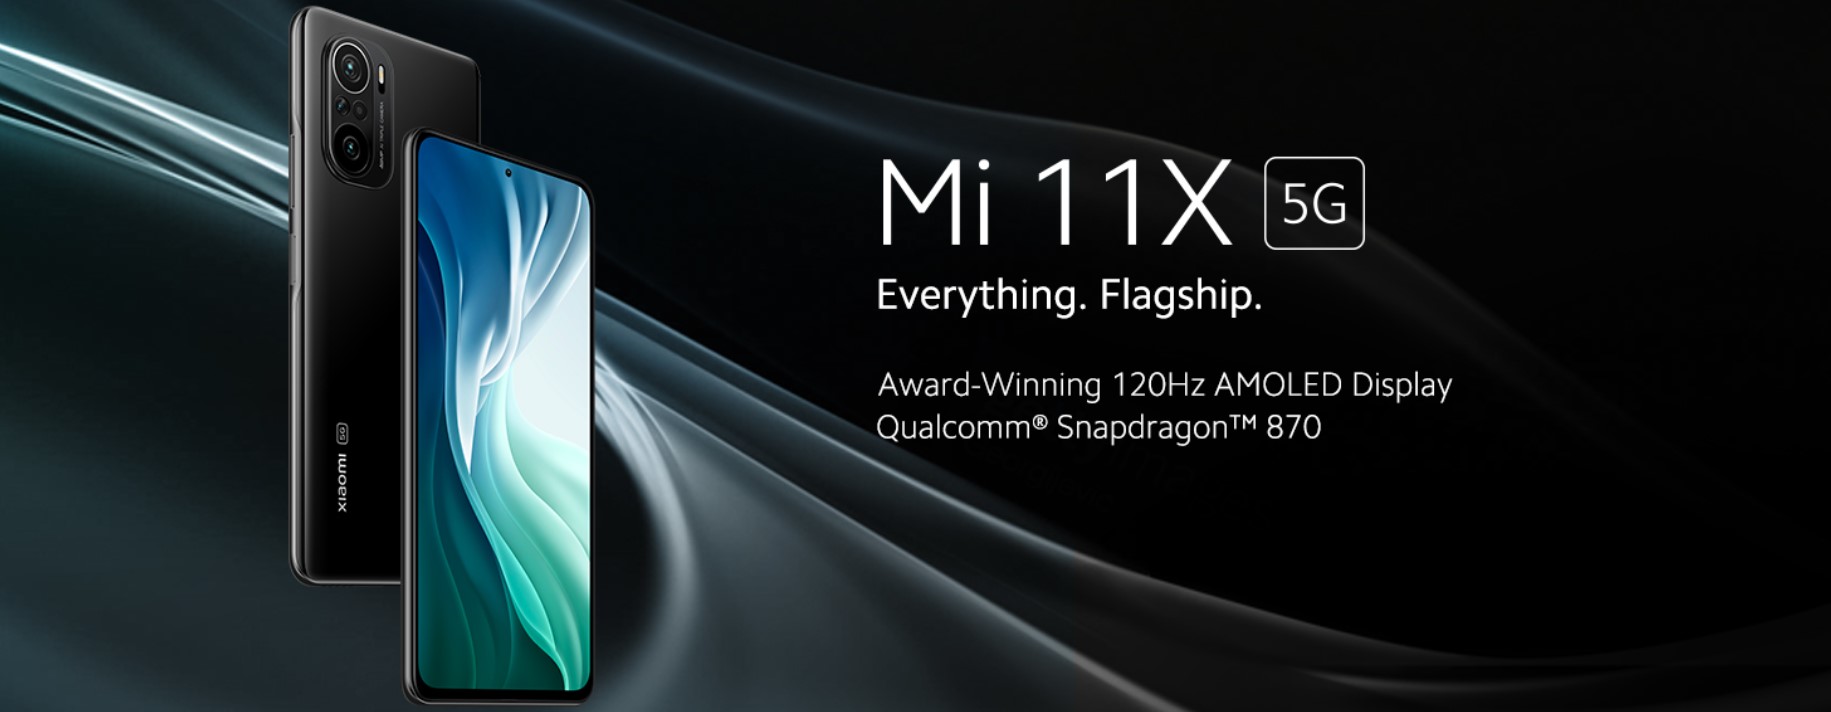 Xiaomi Mi 11X 5G - best flagship 5G phone under 30000